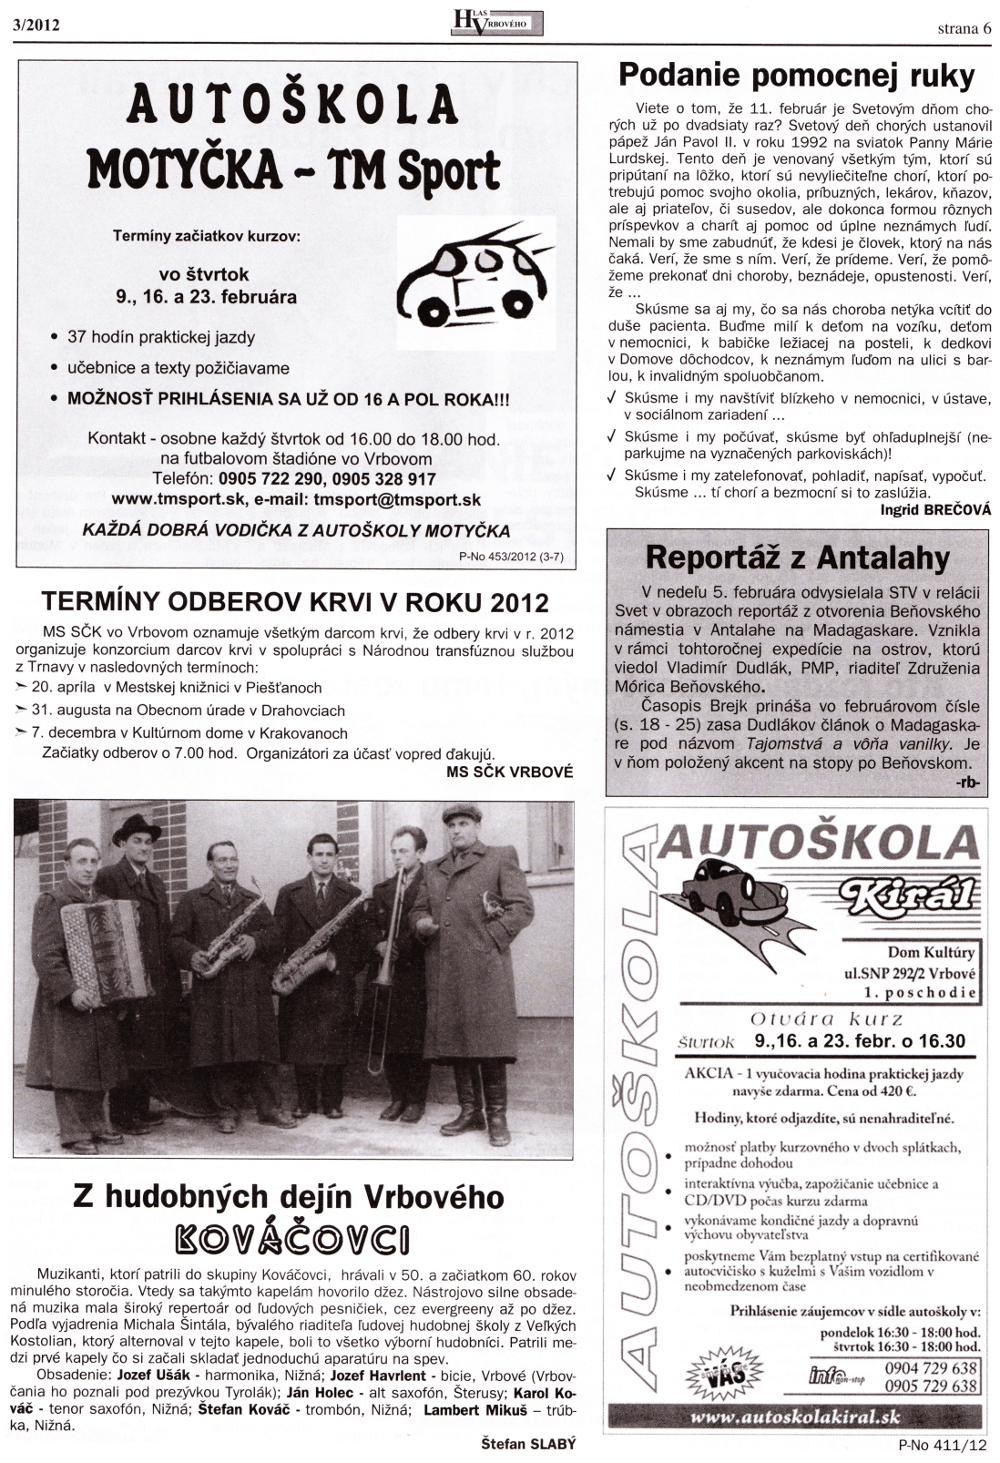 Hlas Vrbového 03/2012, strana 6